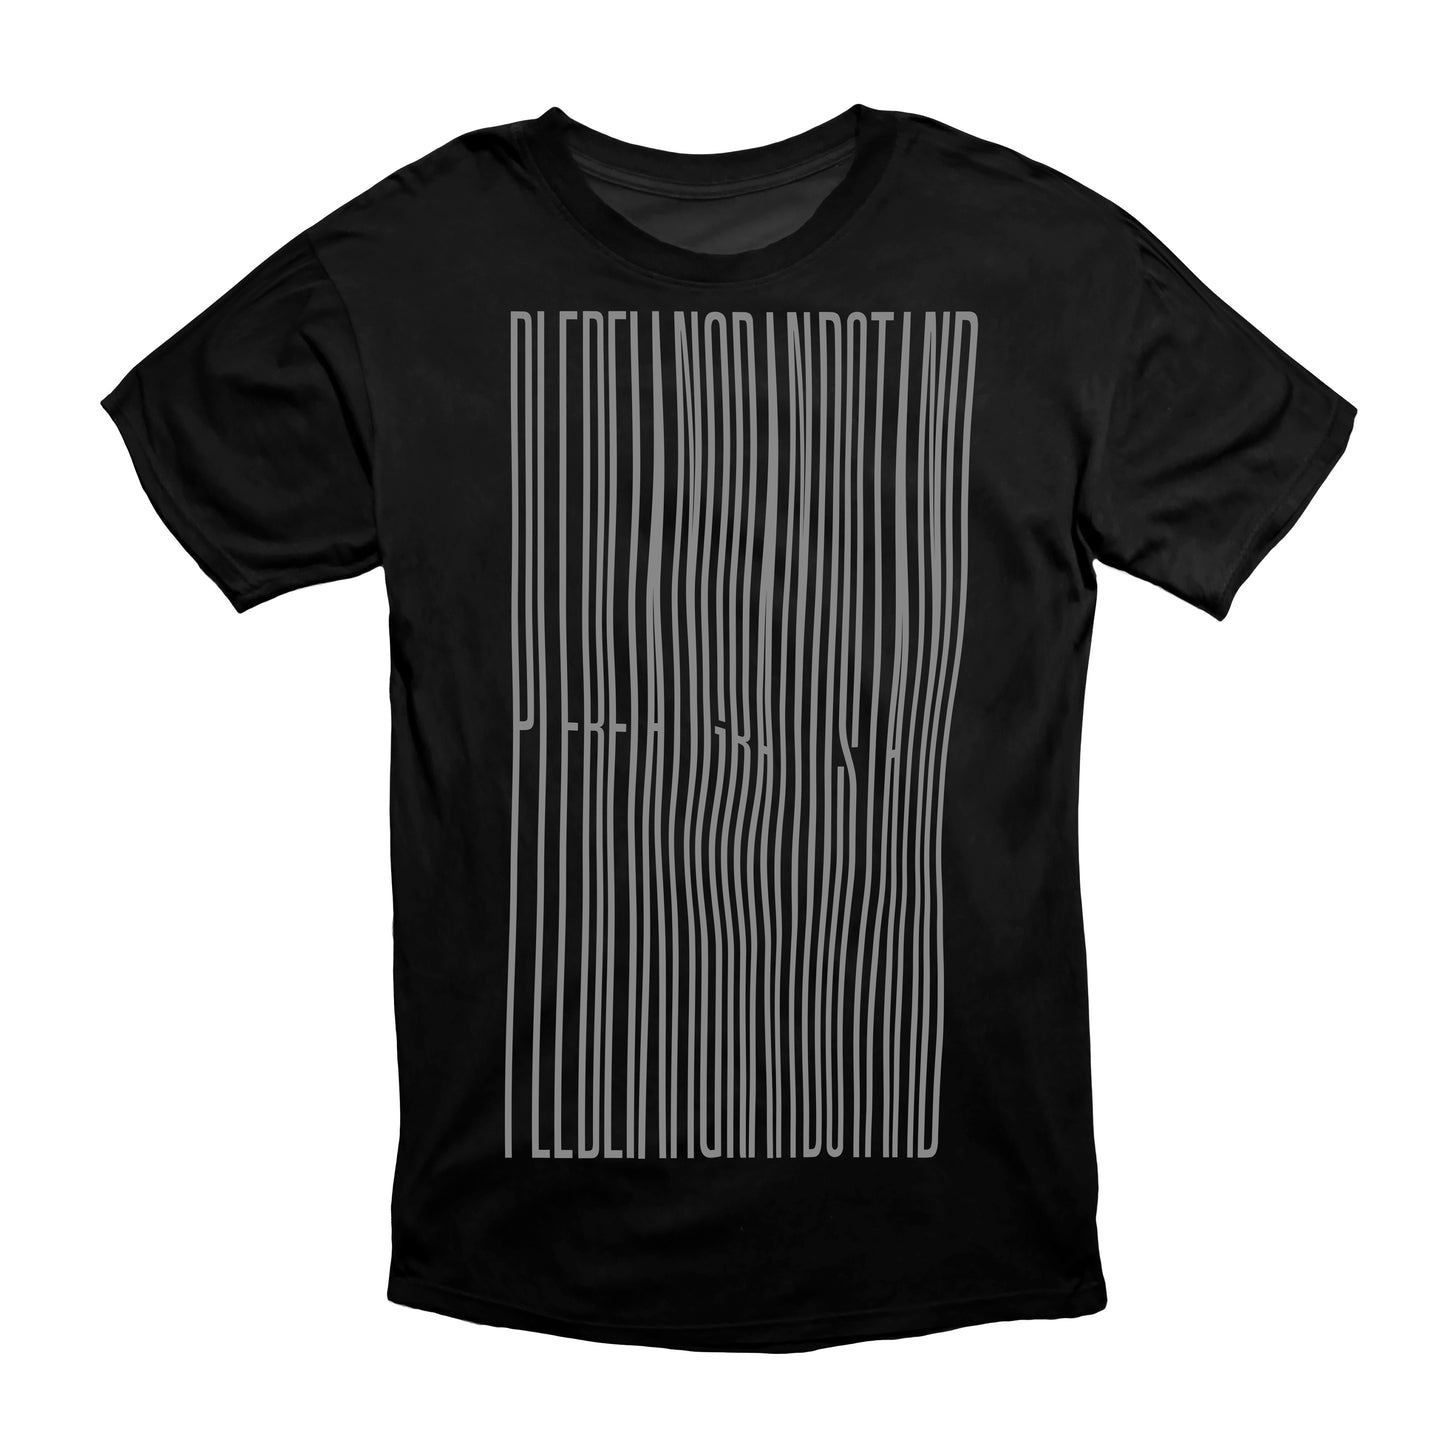 PLEBEIAN GRANDSTAND "NAUFRAGE" Black T-Shirt